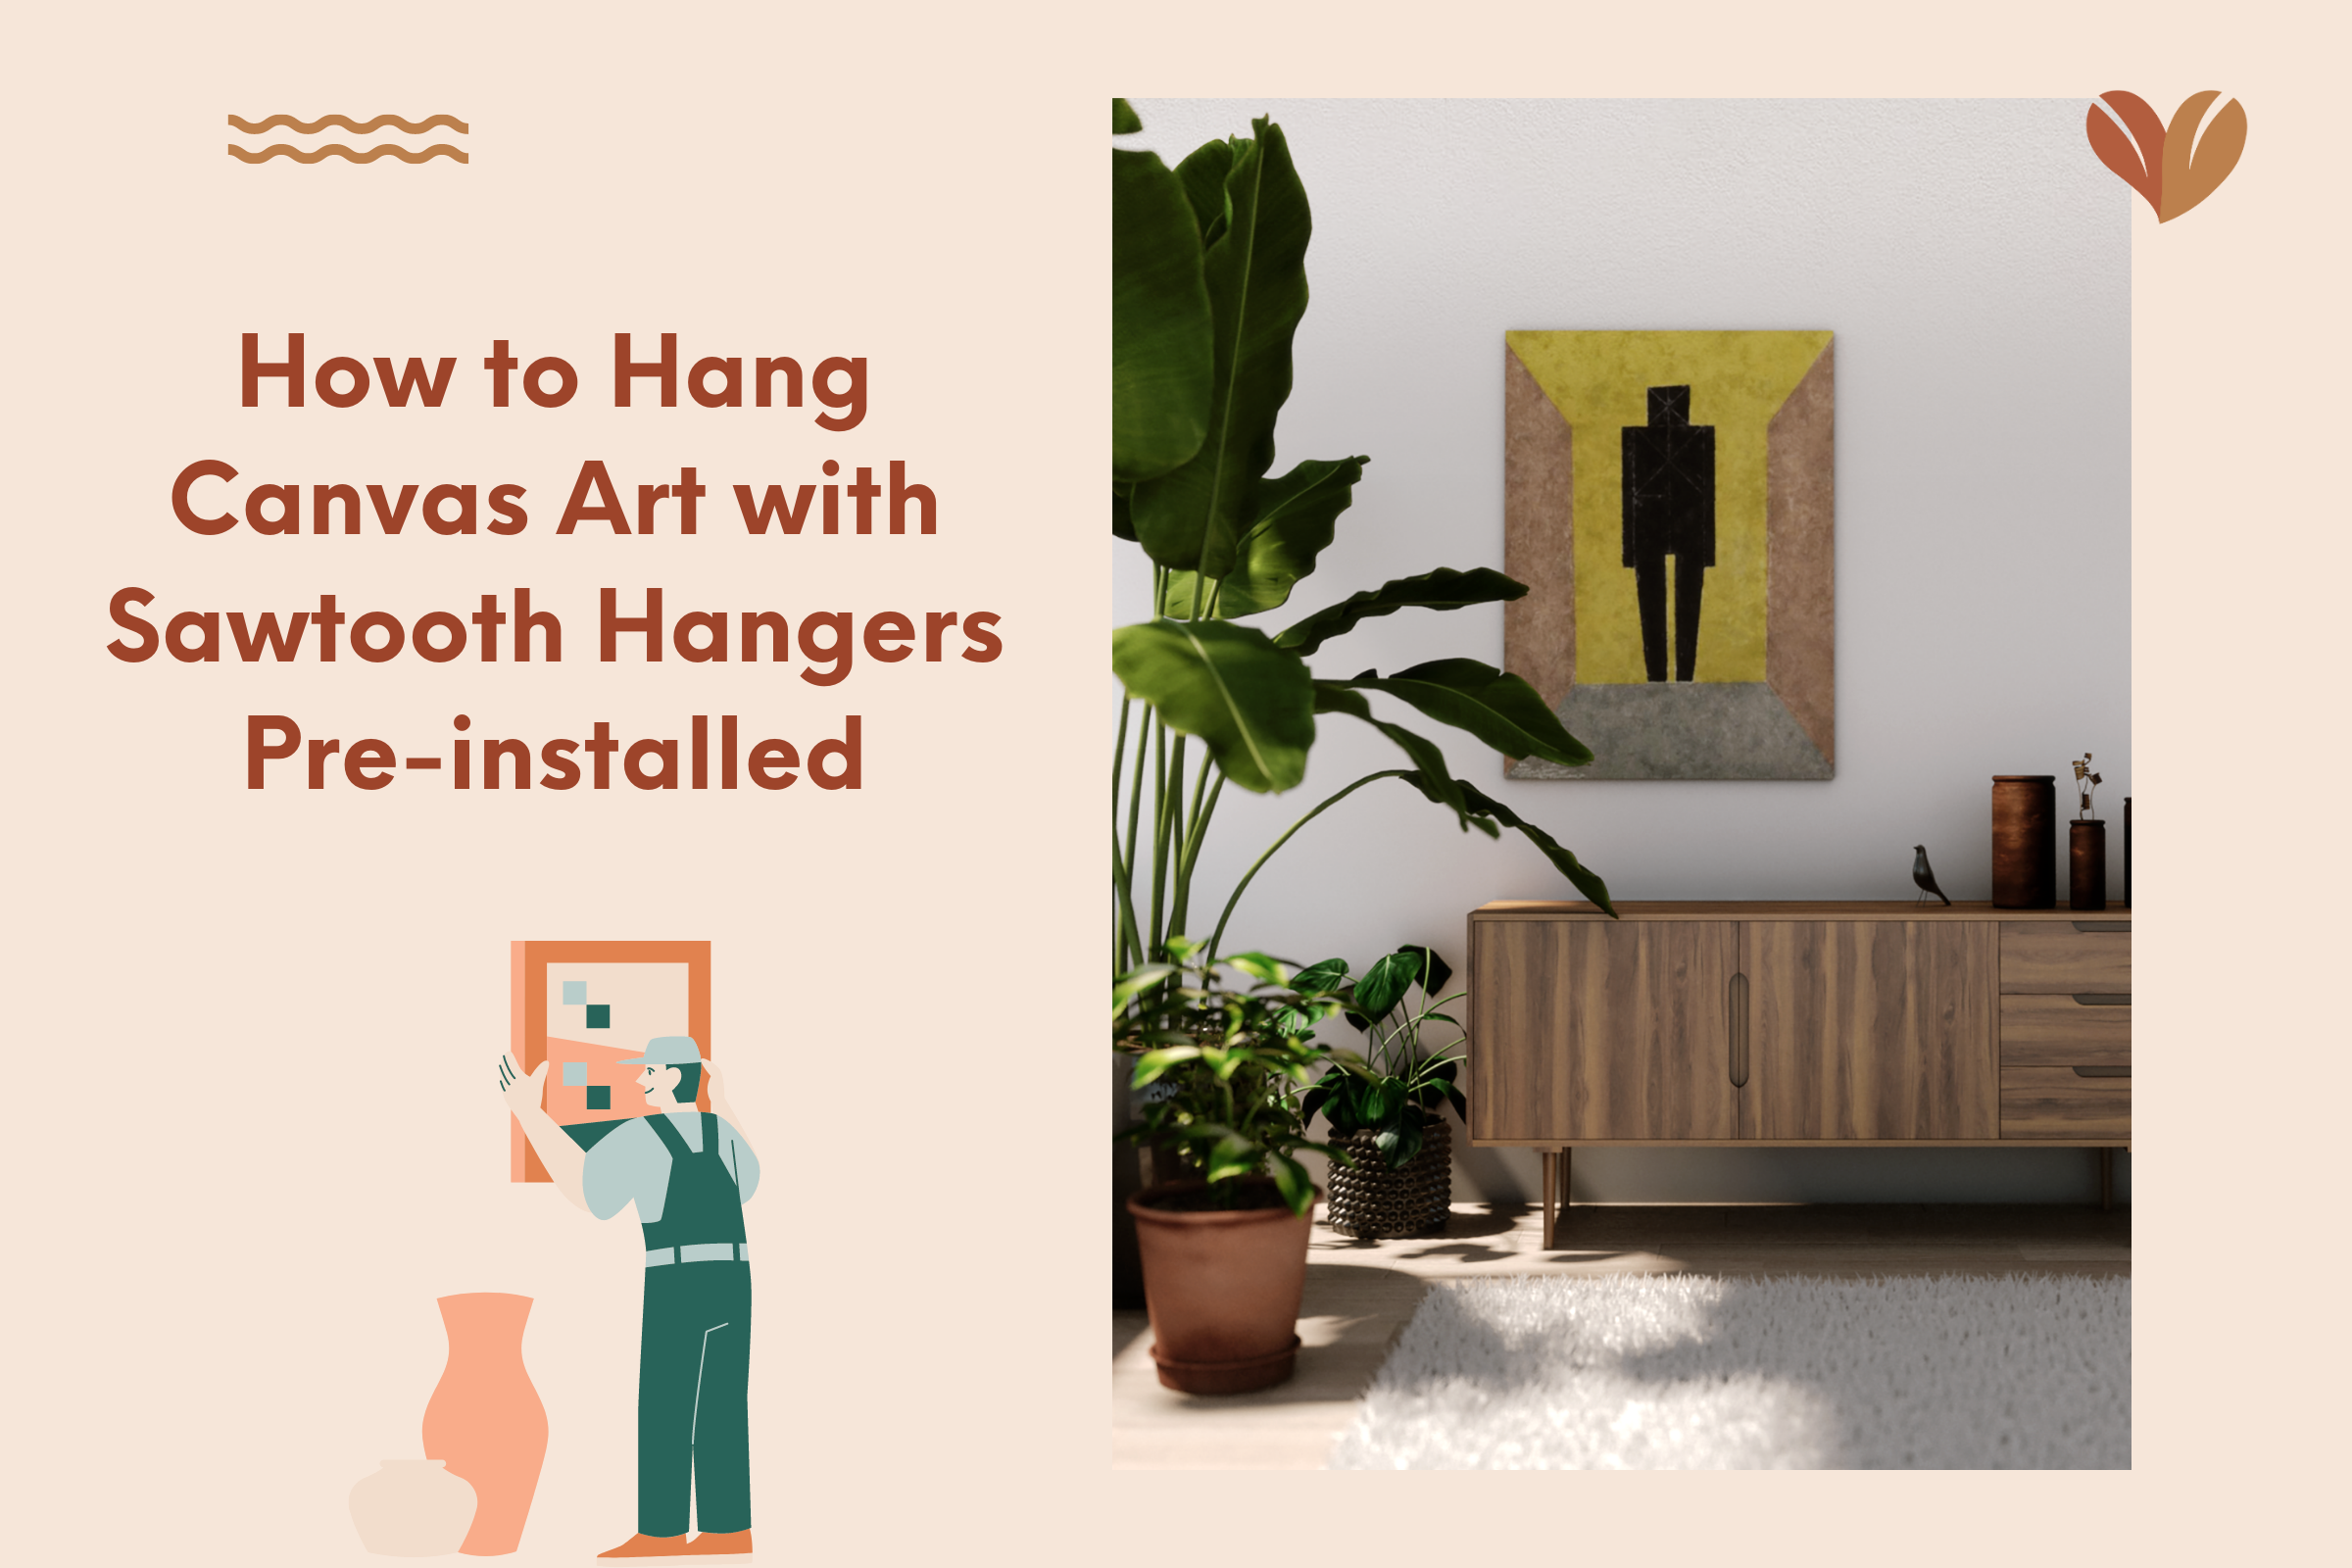 5 Ways To Hang Canvas Art: Nailing the Perfect Display